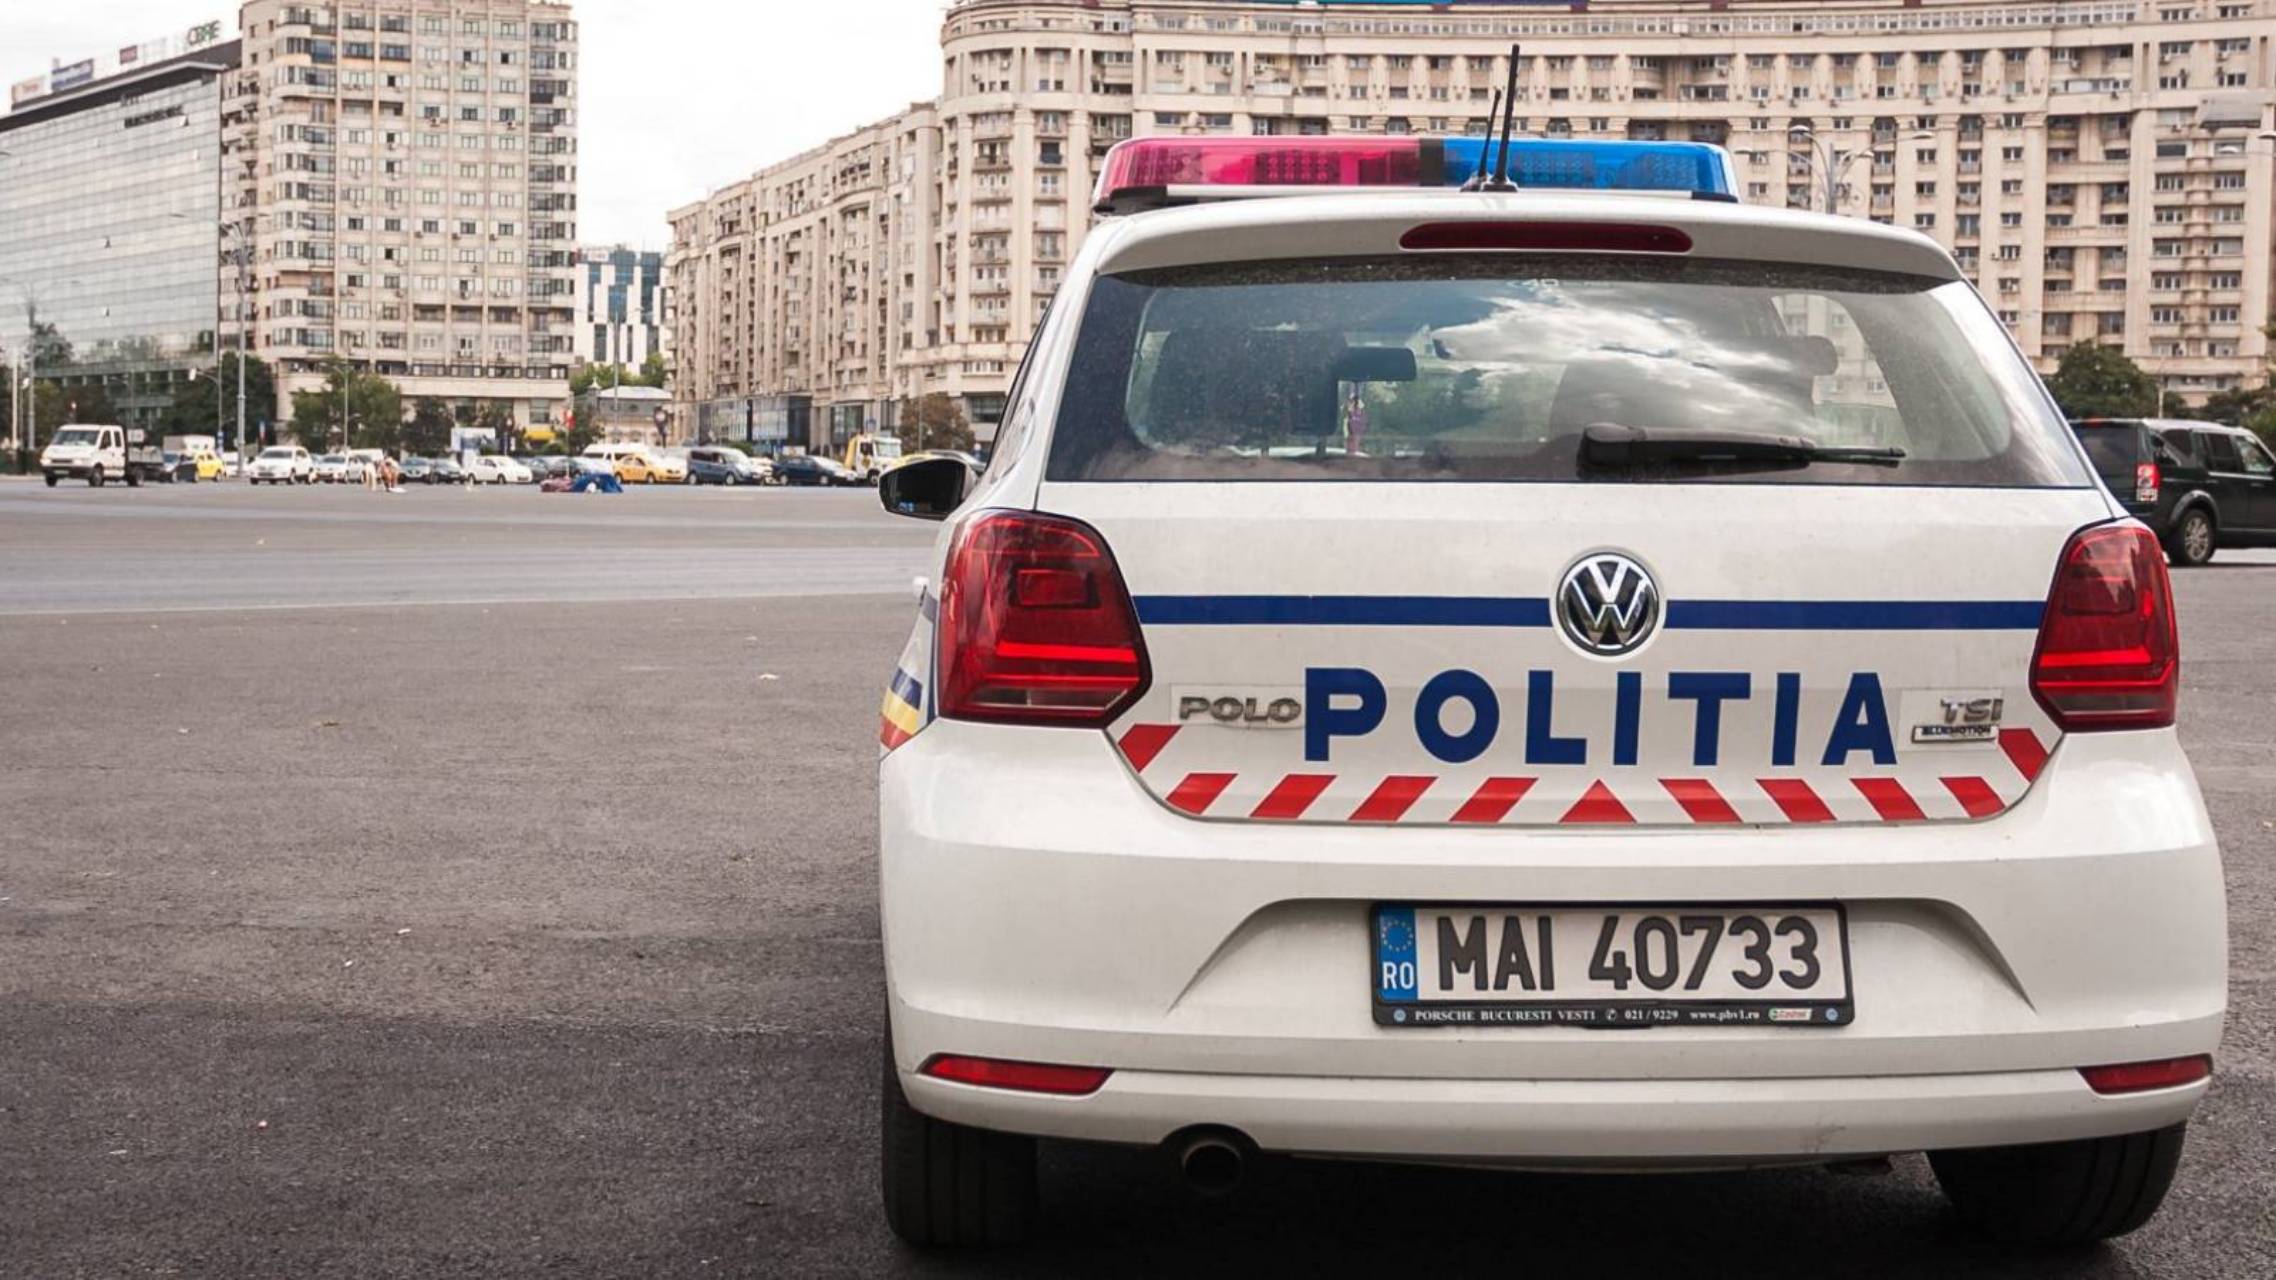 Rumænsk politi MEGET VIGTIG ADVARSEL til ALLE rumænere